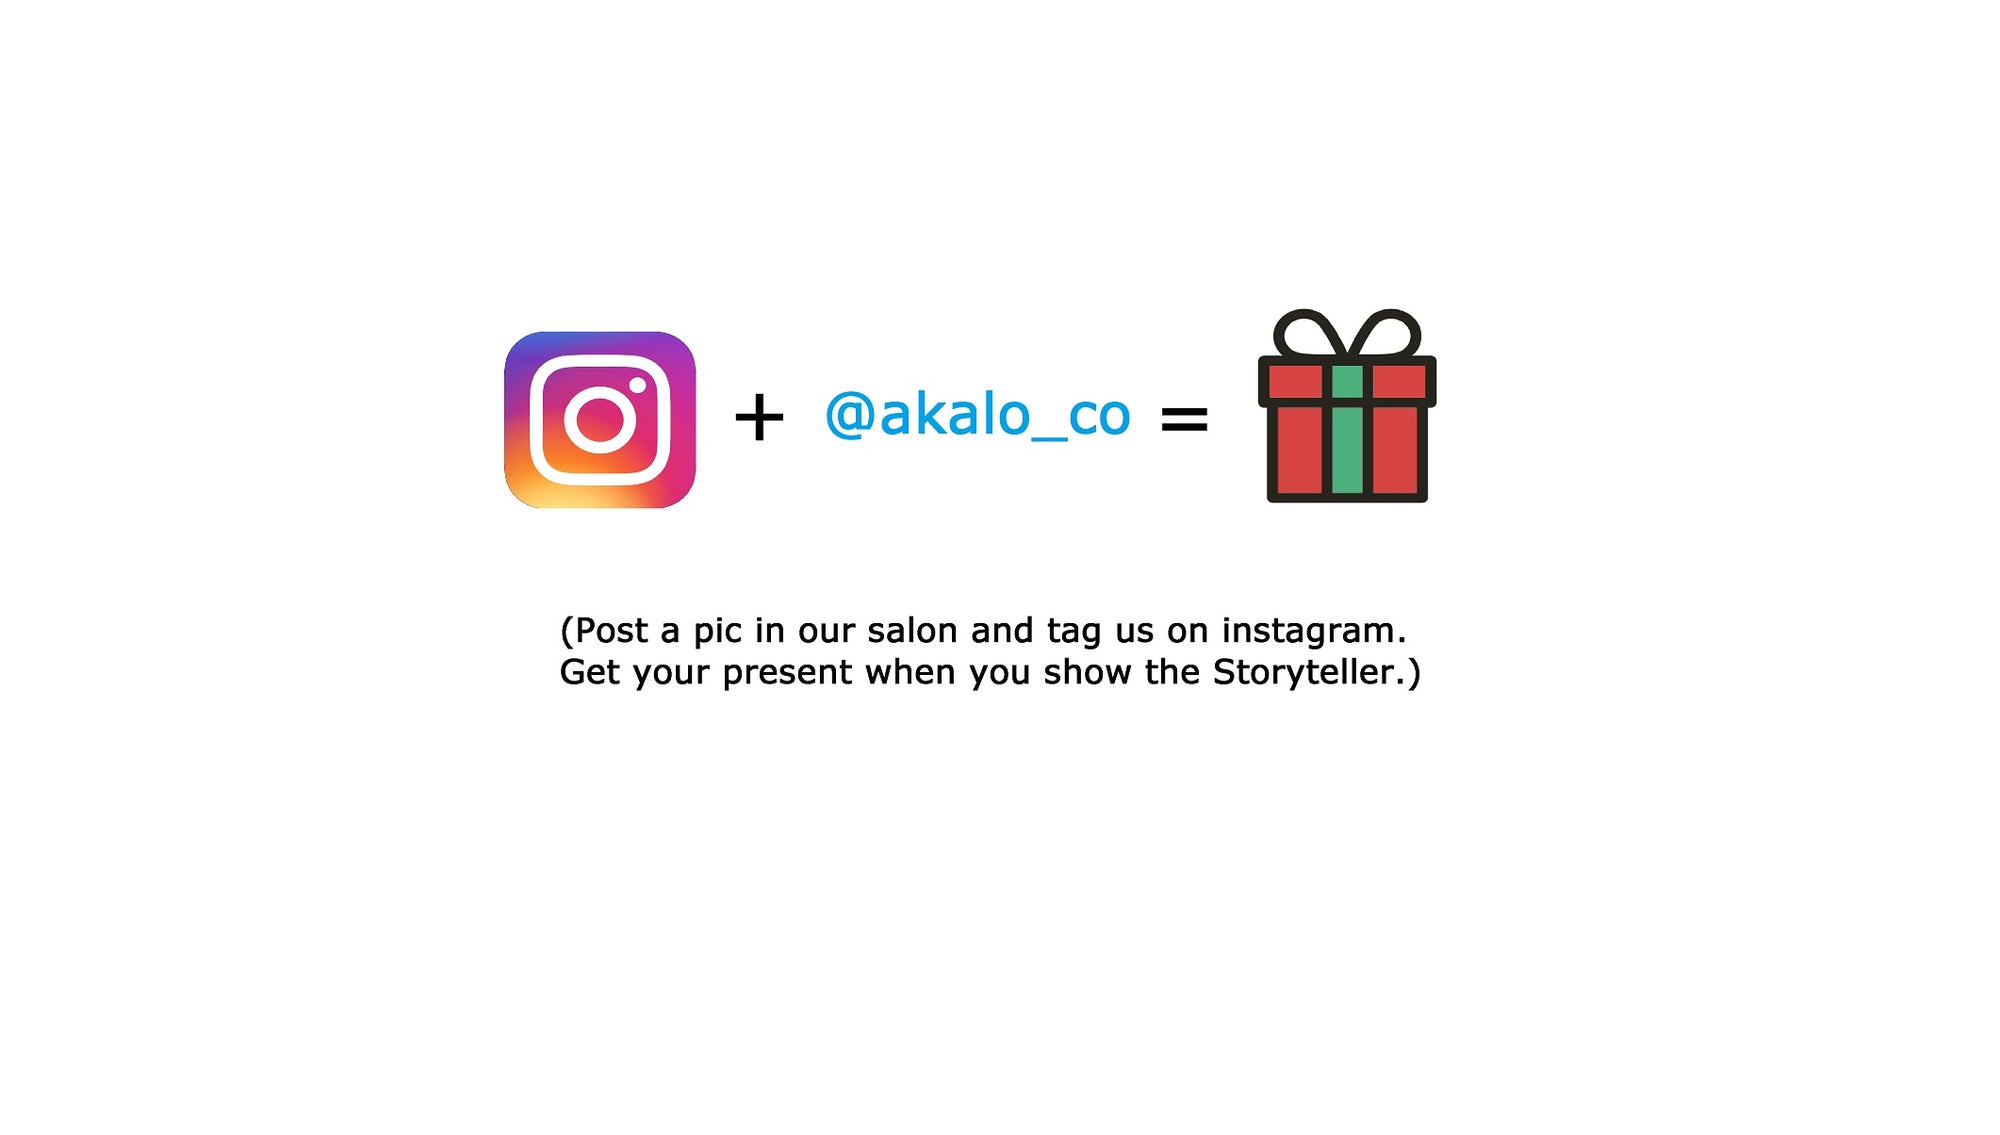 Tag us on Instagram - Get a Bonus - AKALO